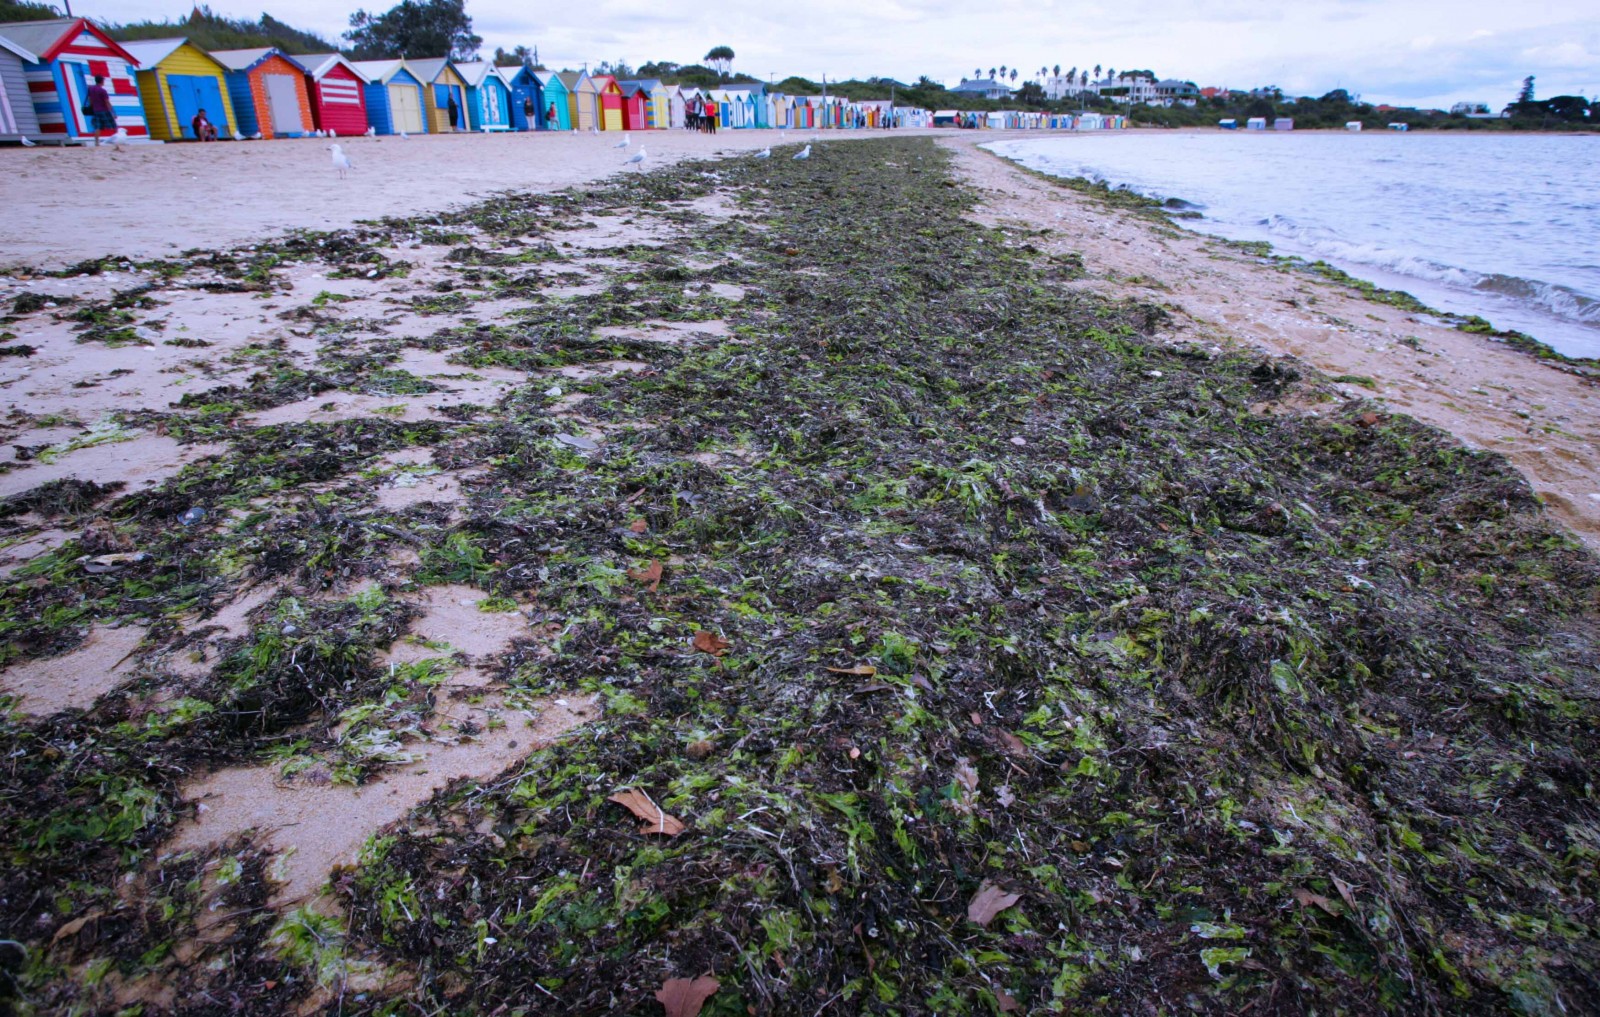 Cảnh quan thiên nhiên và hệ động thực vật biển được bảo vệ và giữ gìn nguyên sơ trên các bãi biển ở Brighton. Trong ảnh là những mảng rong rêu từ biển theo con nước trồi lên mang theo thức ăn cho những chú chim biển như hải âu…